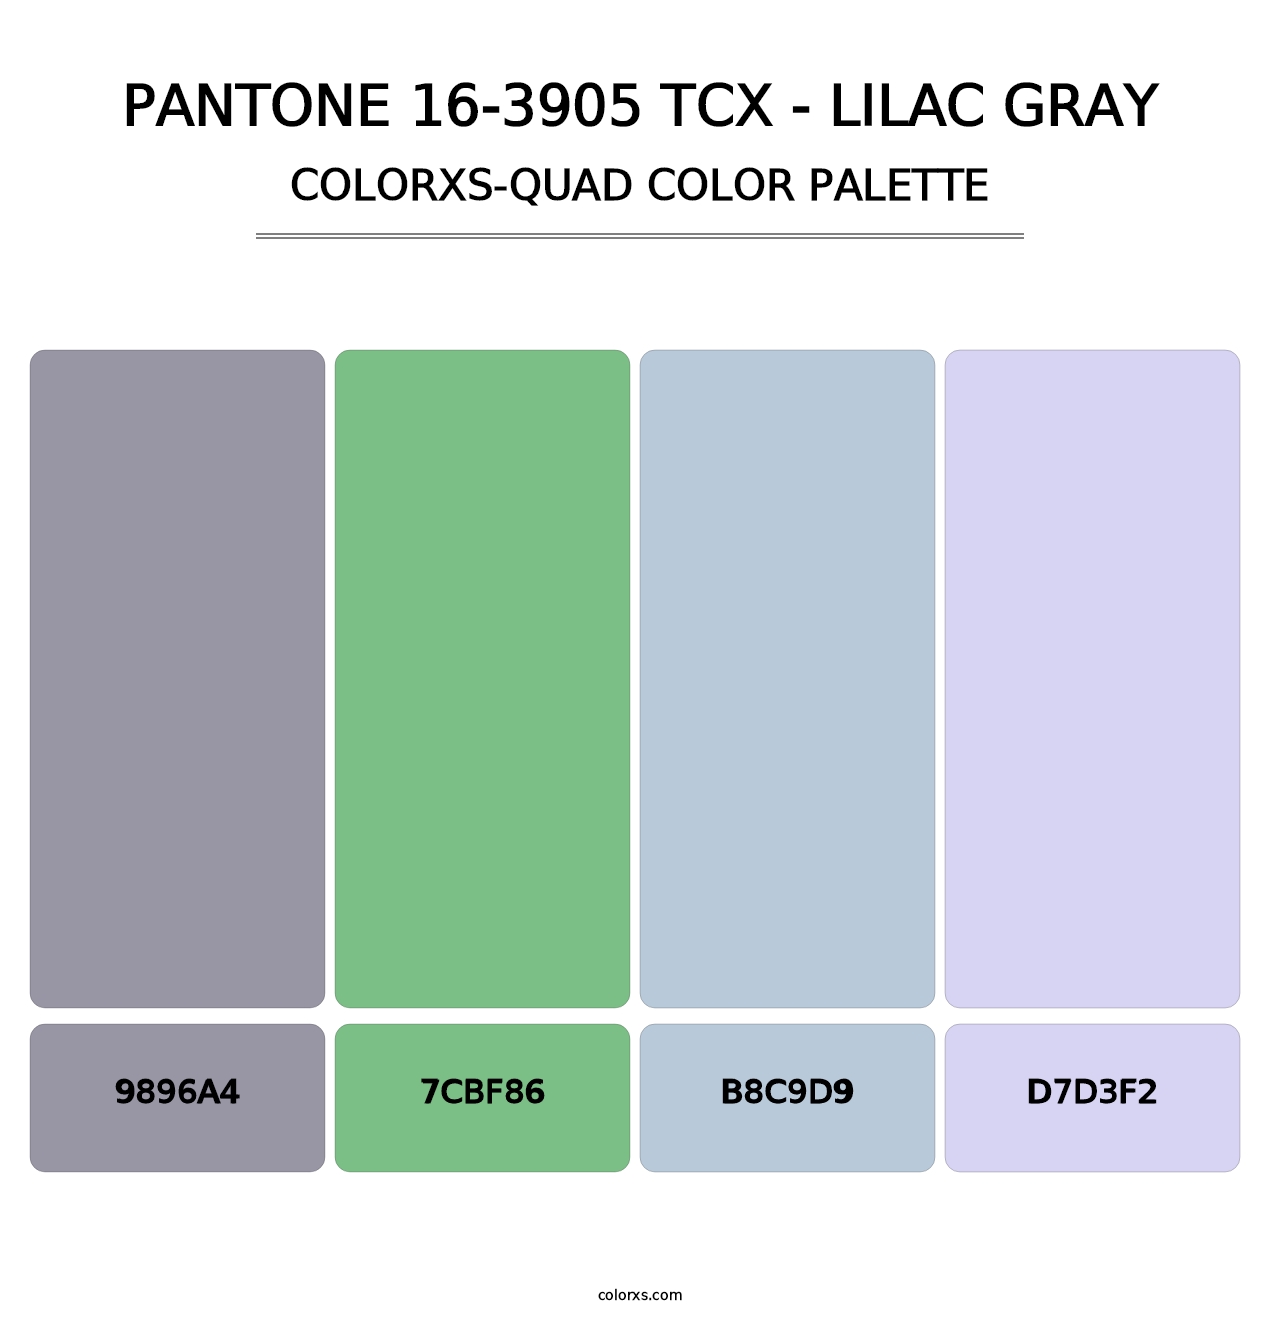 PANTONE 16-3905 TCX - Lilac Gray - Colorxs Quad Palette